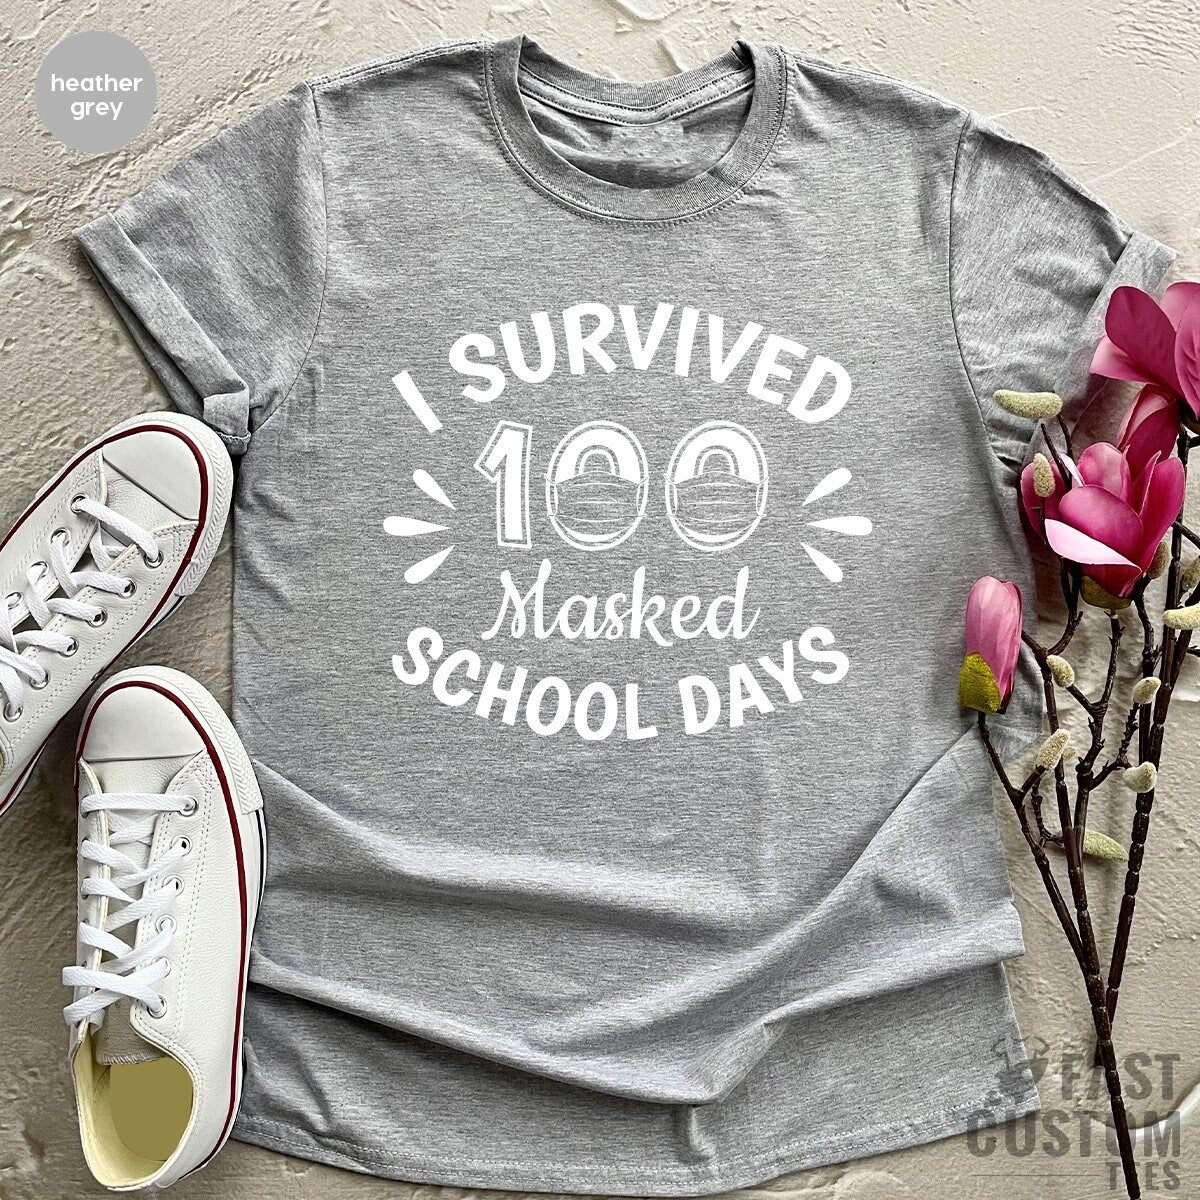 Teacher TShirt, I Survived 100 Masked School Days, Back To Schooling Teacher Shirt - Fastdeliverytees.com